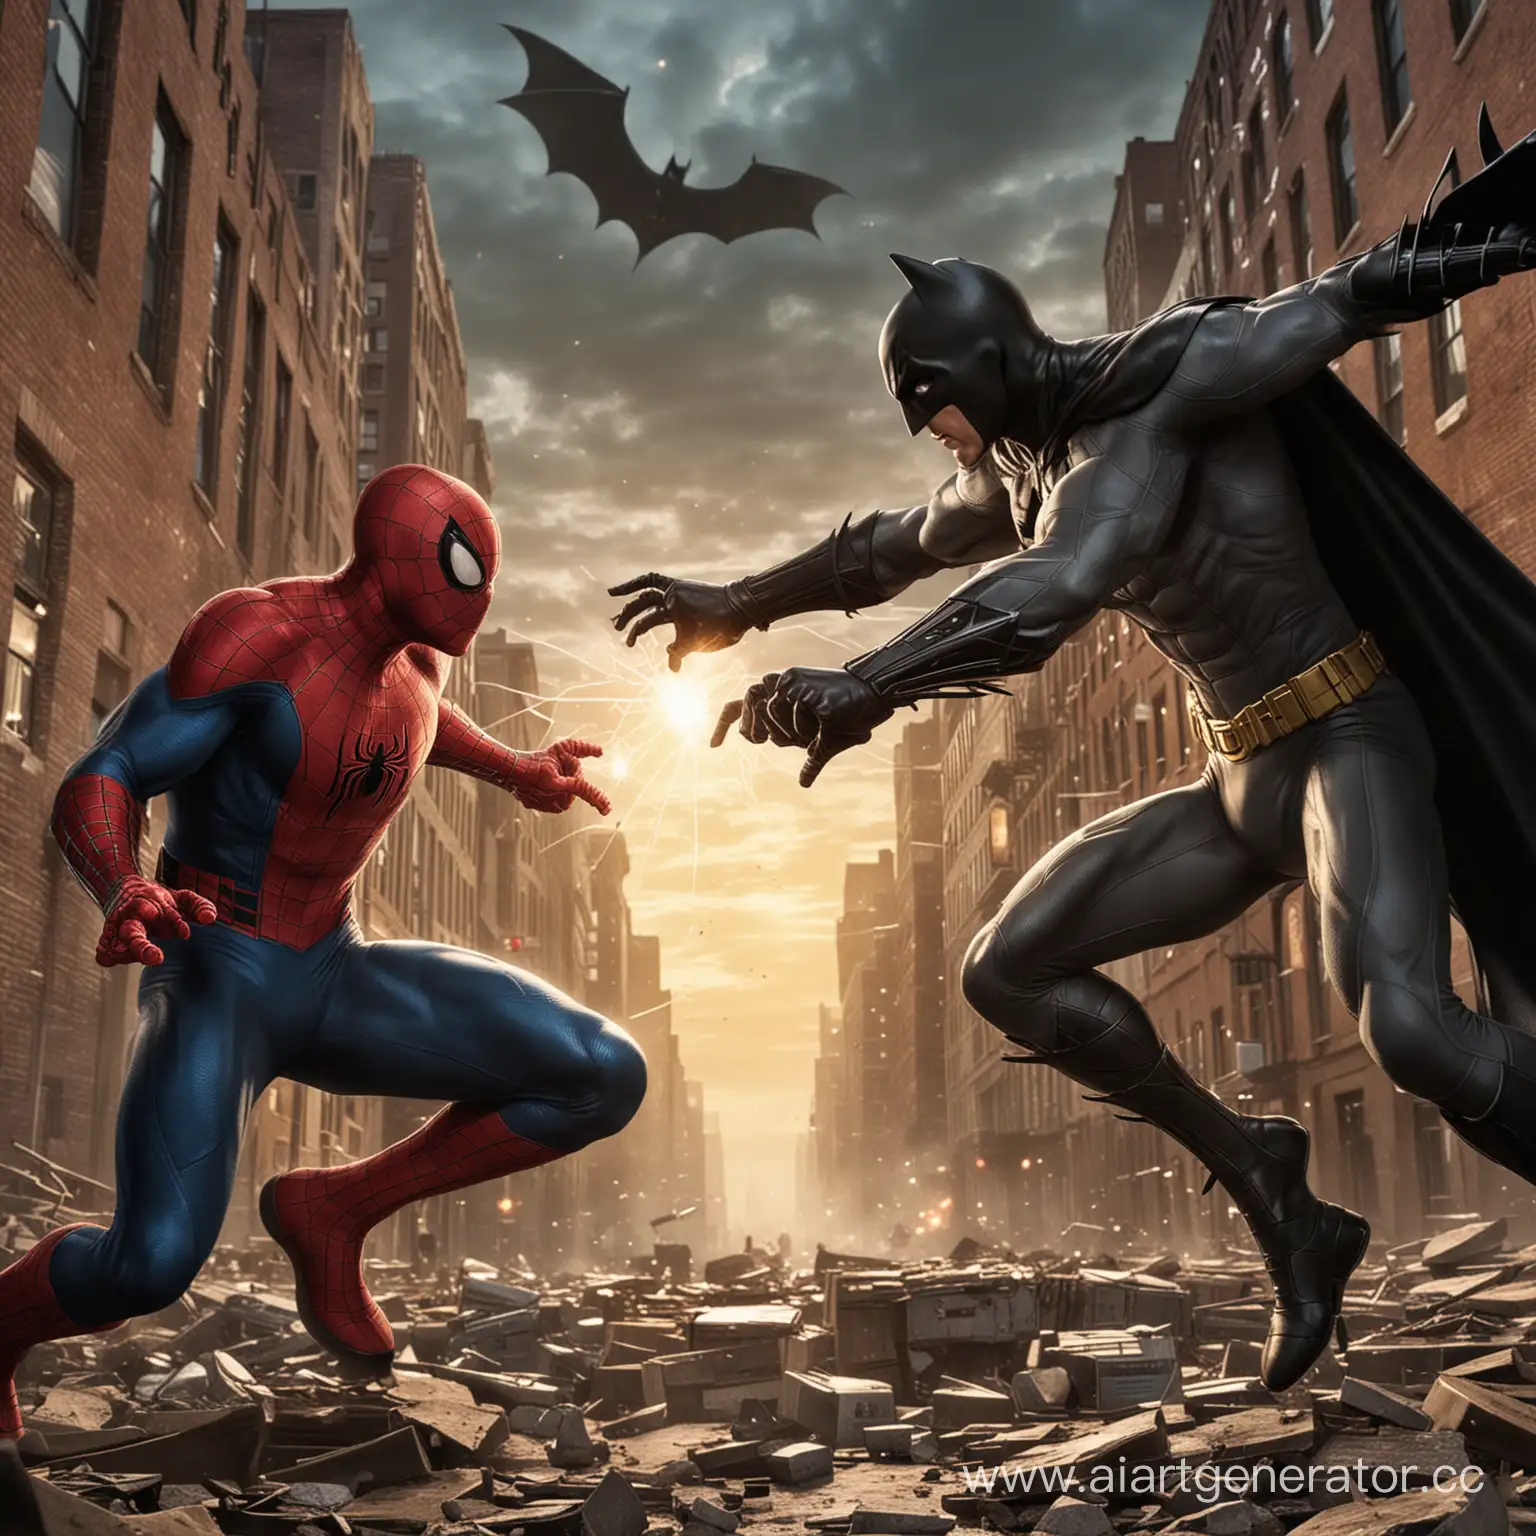 "Человек-паук против Бэтмена" – это фантастическое противостояние двух известных супергероев комиксов. Несмотря на то, что оба персонажа являются героями, они имеют разные наборы навыков и способности.